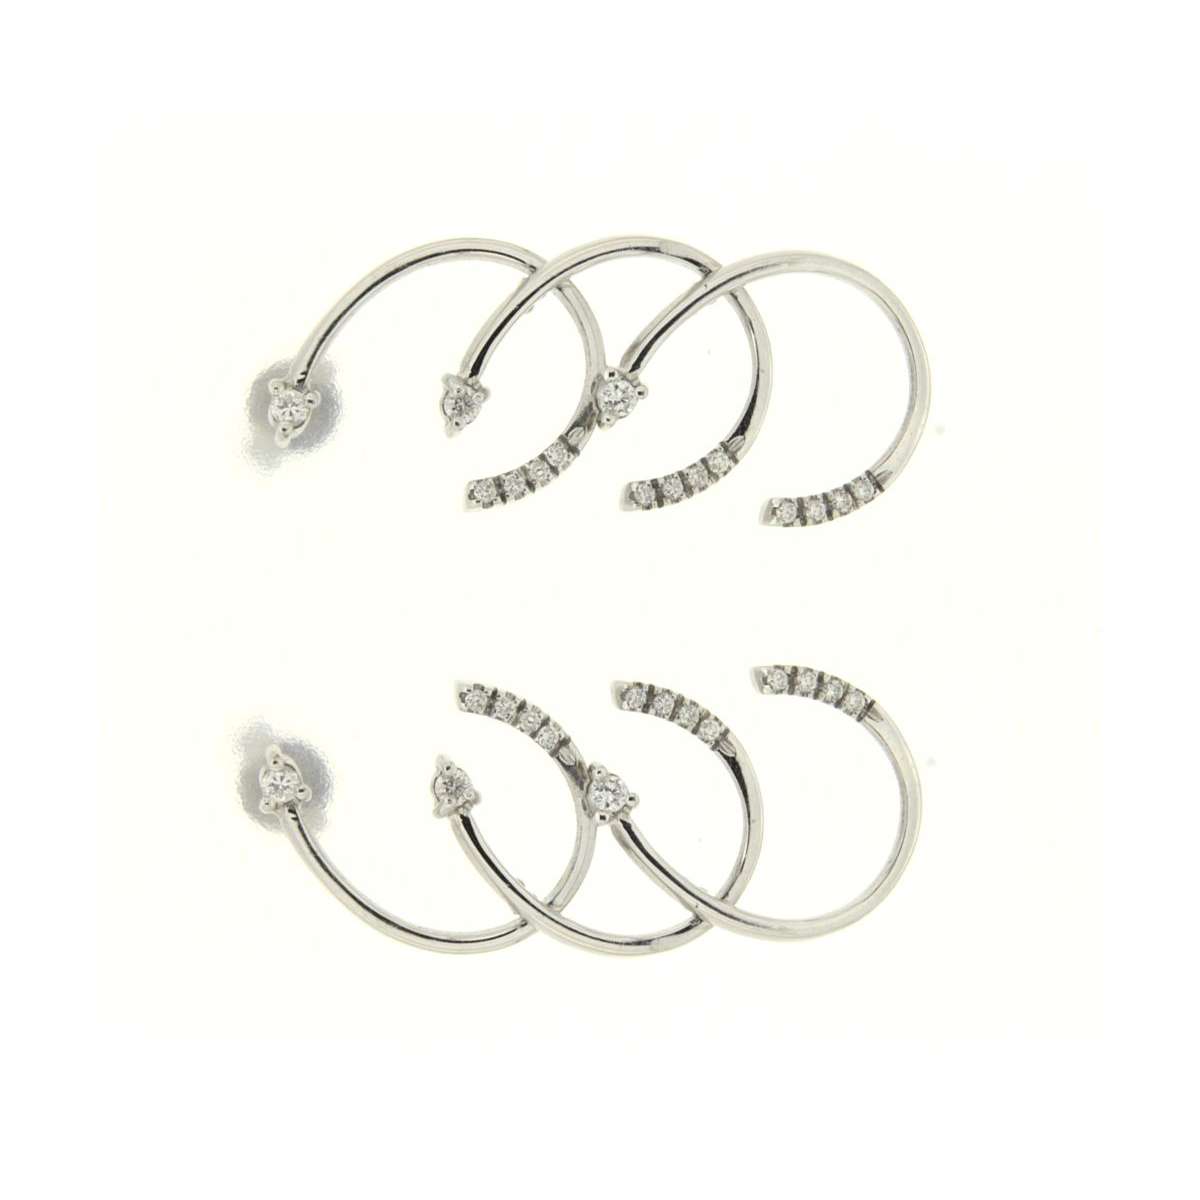 Fancy earrings 0.30 carats diamonds G Color VS1 Clarity